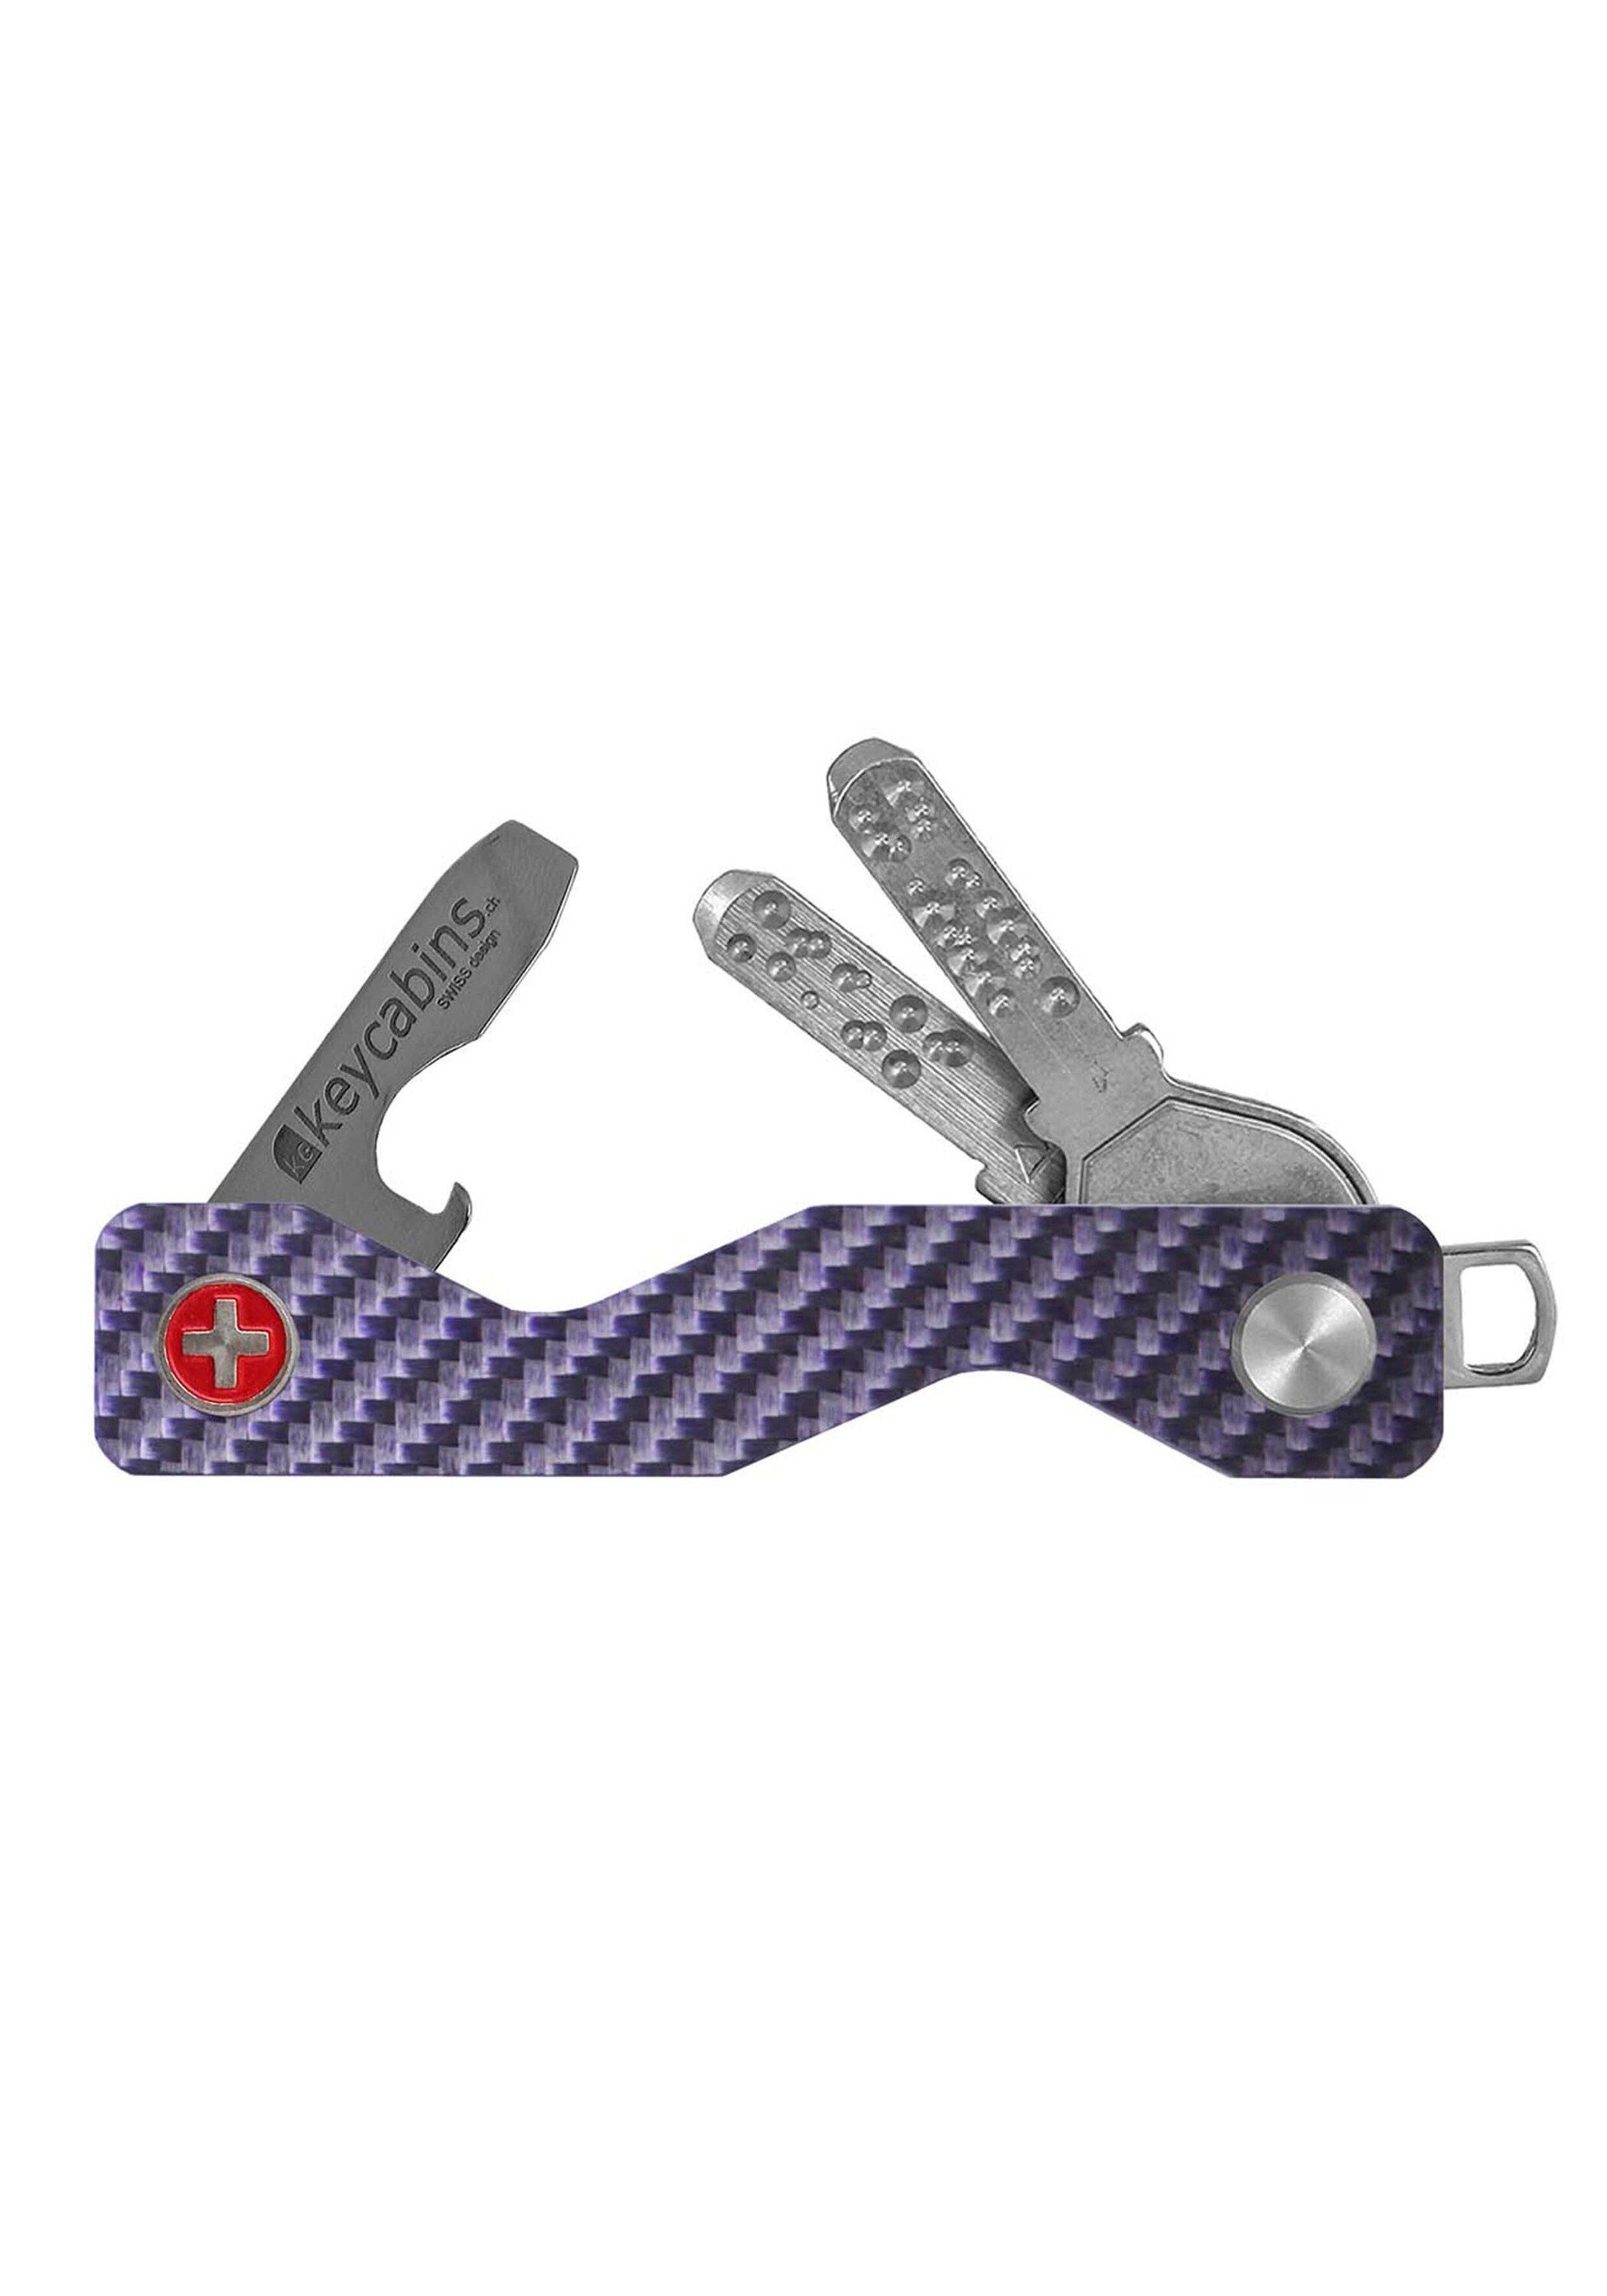 Carbon Schlüsselanhänger keycabins violett SWISS Made S3,